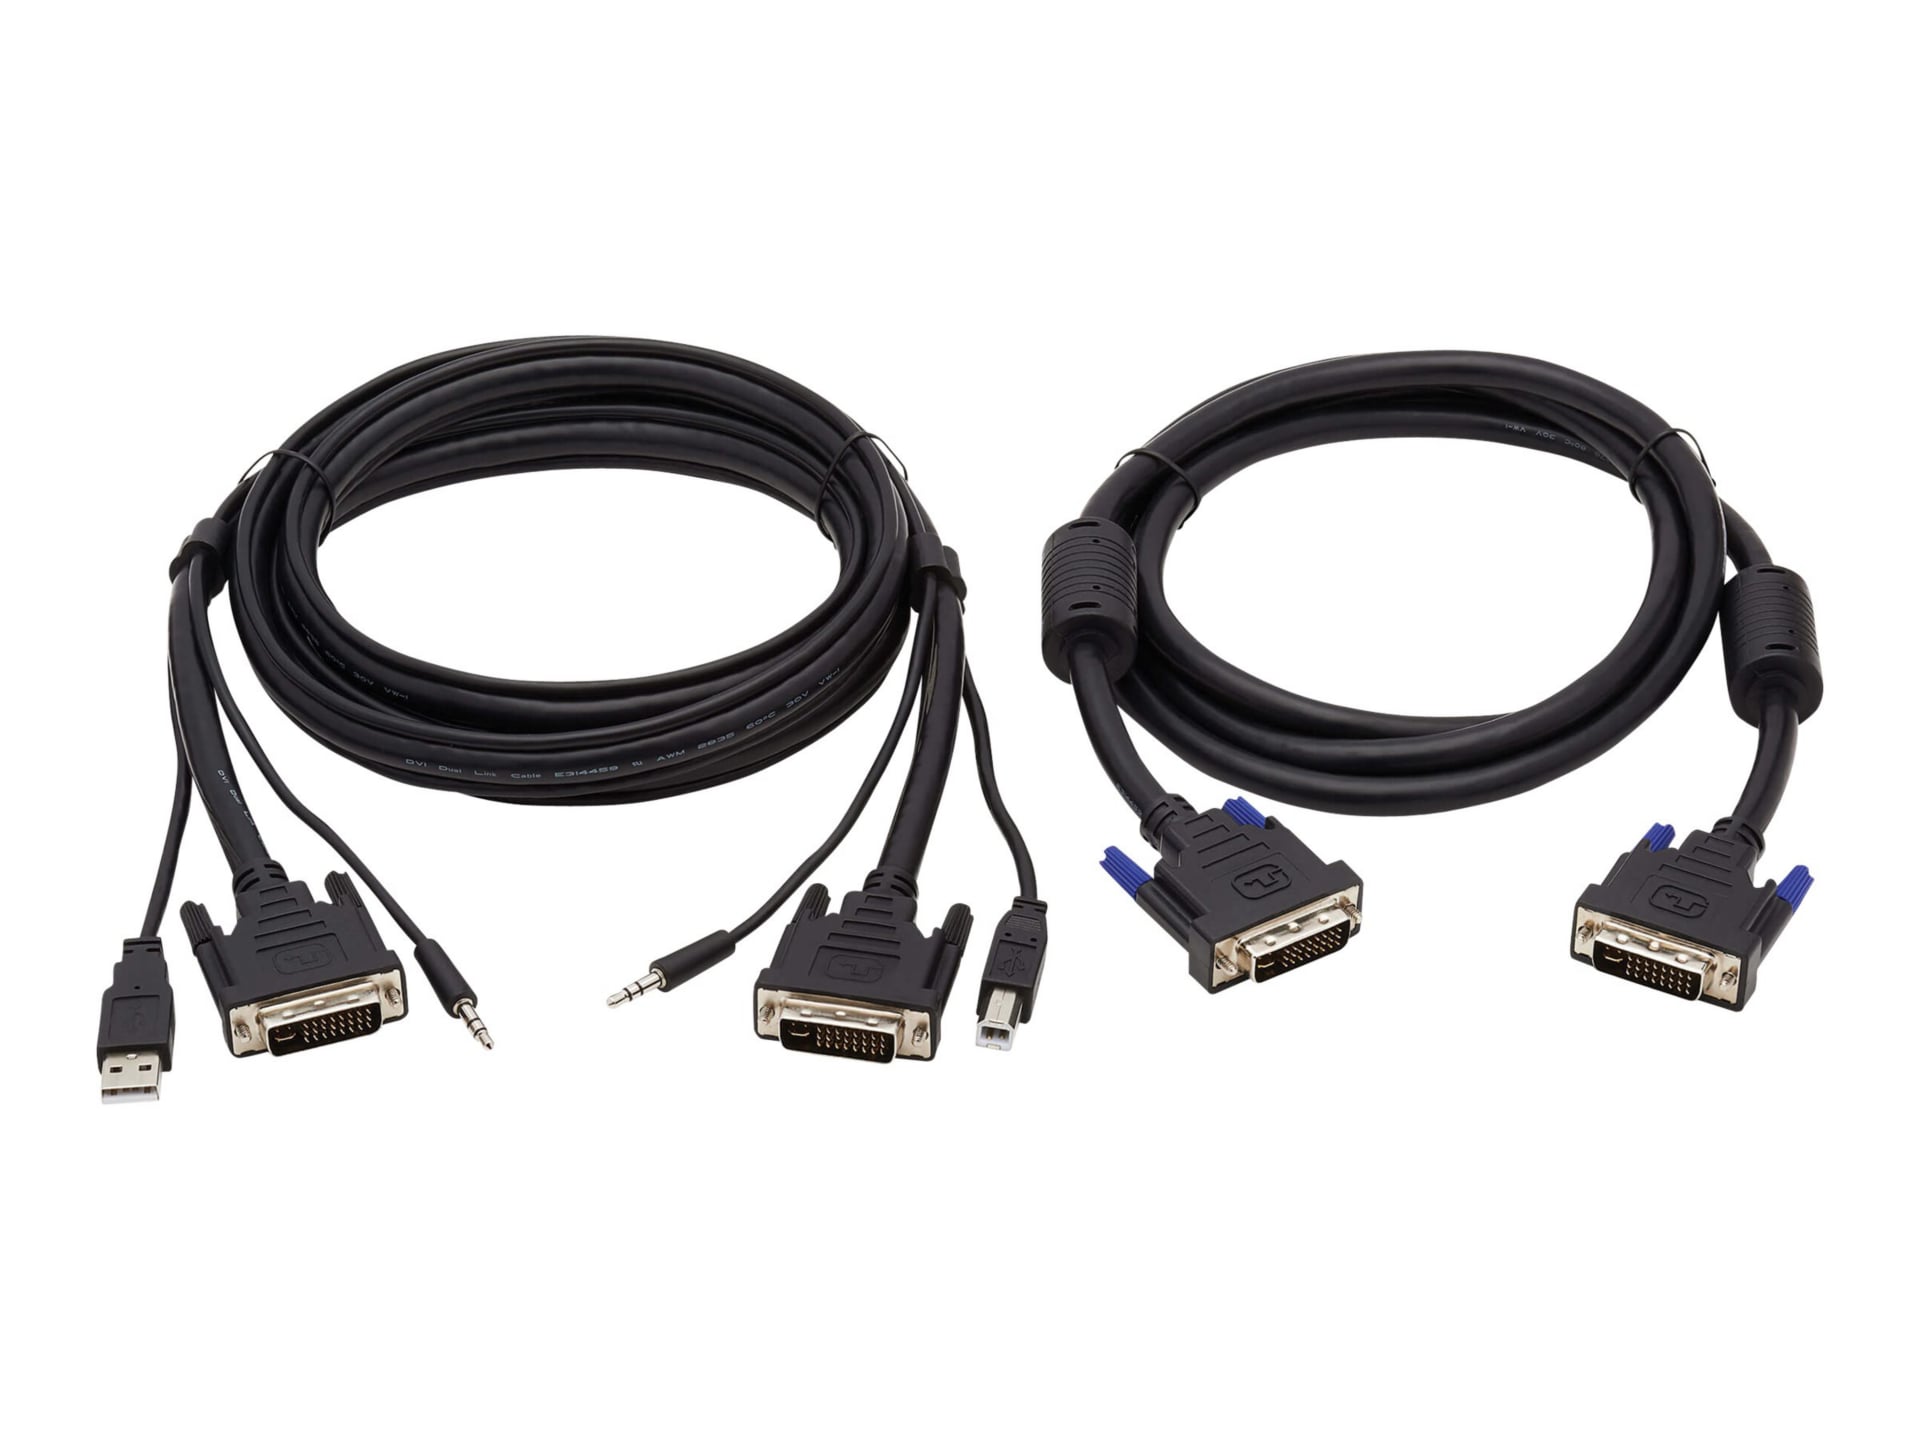 Tripp Lite Dual DVI KVM Cable Kit - DVI, USB, 3.5 mm Audio (3xM/3xM) + DVI (M/M), 1080p, 6 ft., Black - video / USB /